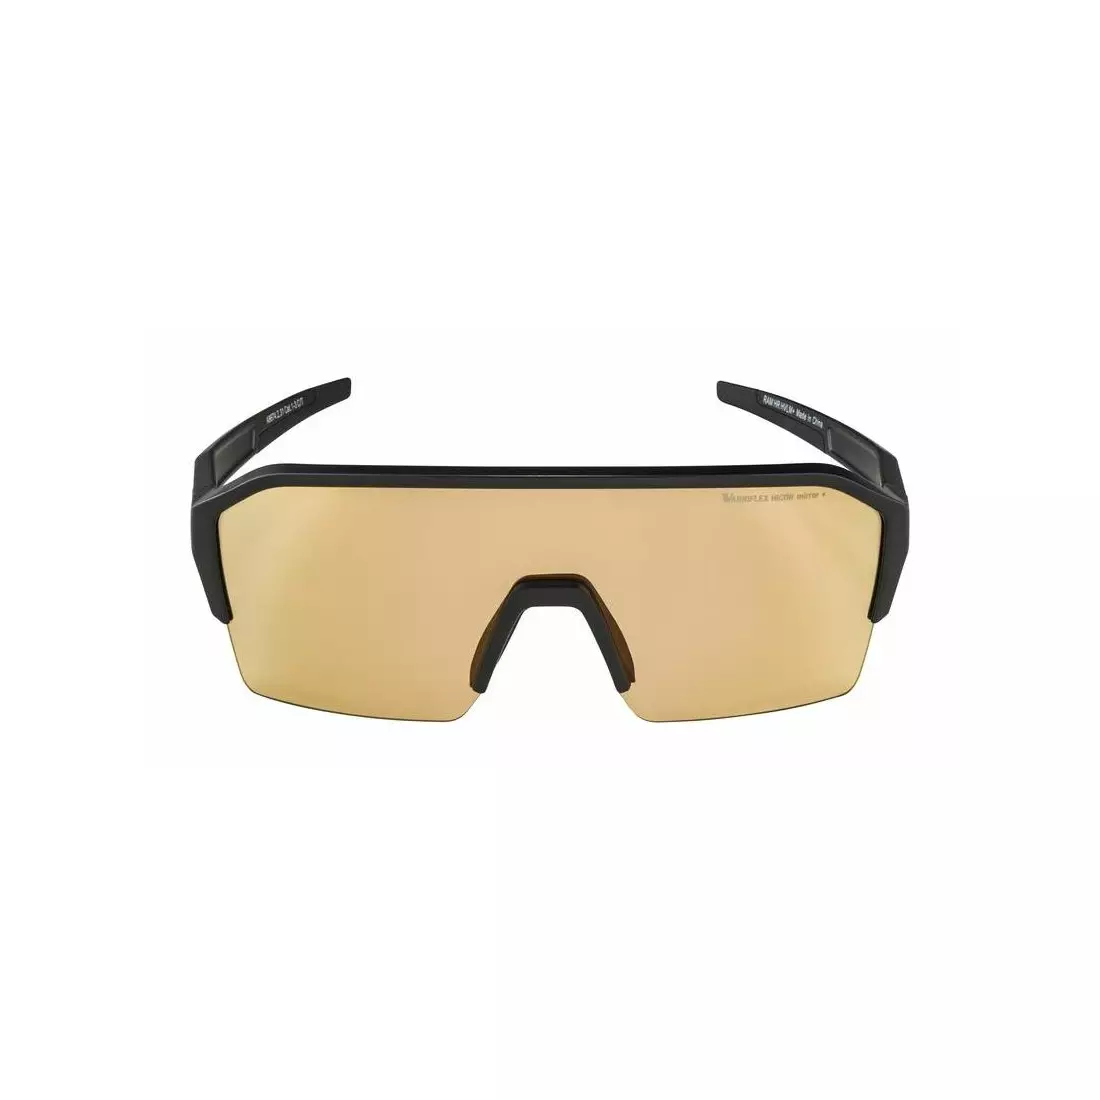 ALPINA ochelari sportivi RAM HR HVLM+ SILVER MIRROR S1-3 black matt A8674231